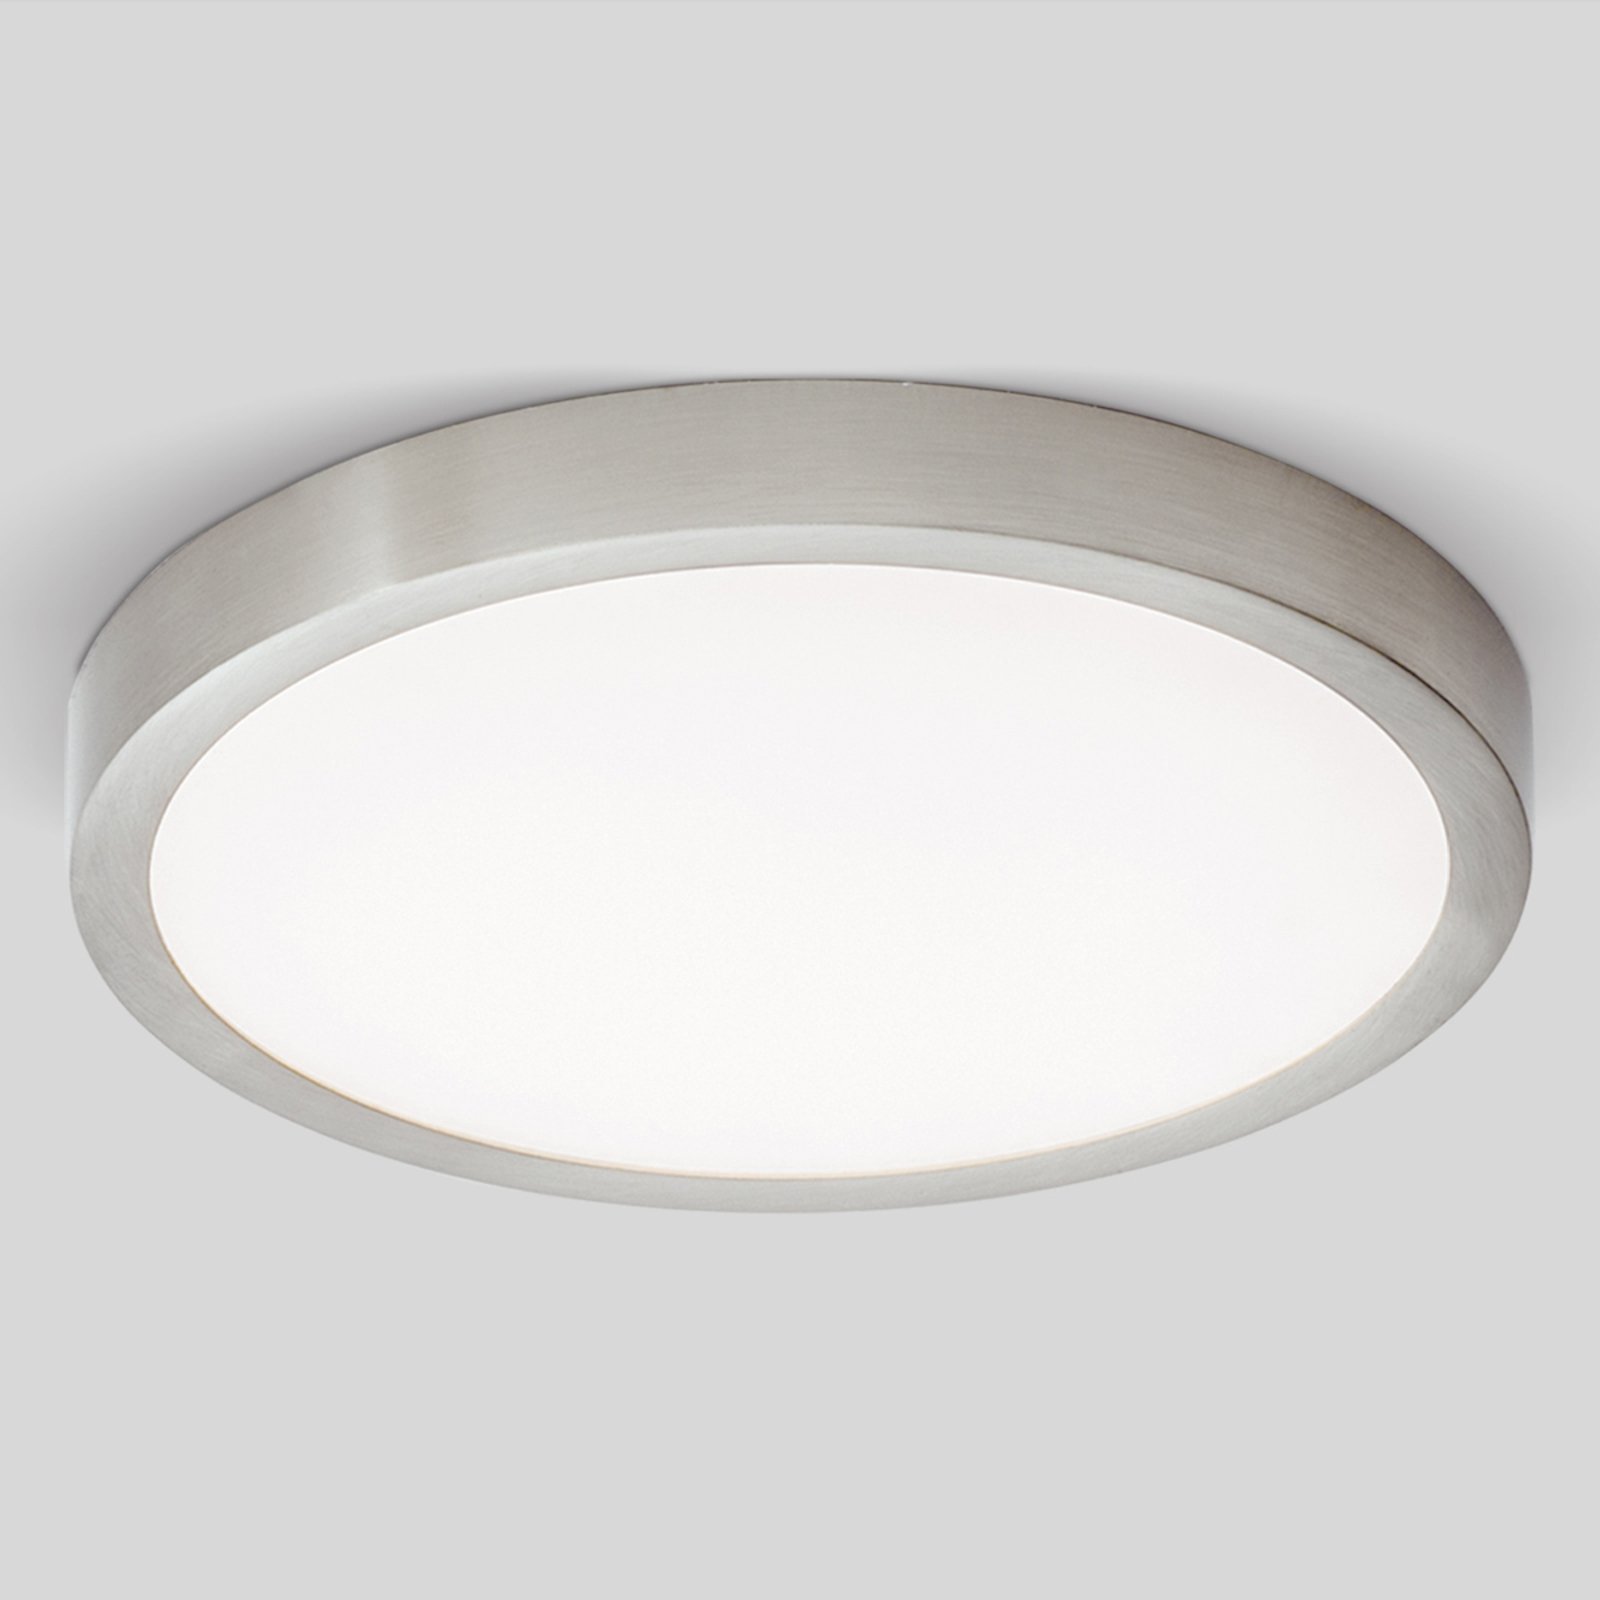 LED stropní světlo Vika, kulaté, titan mat, Ø 23cm